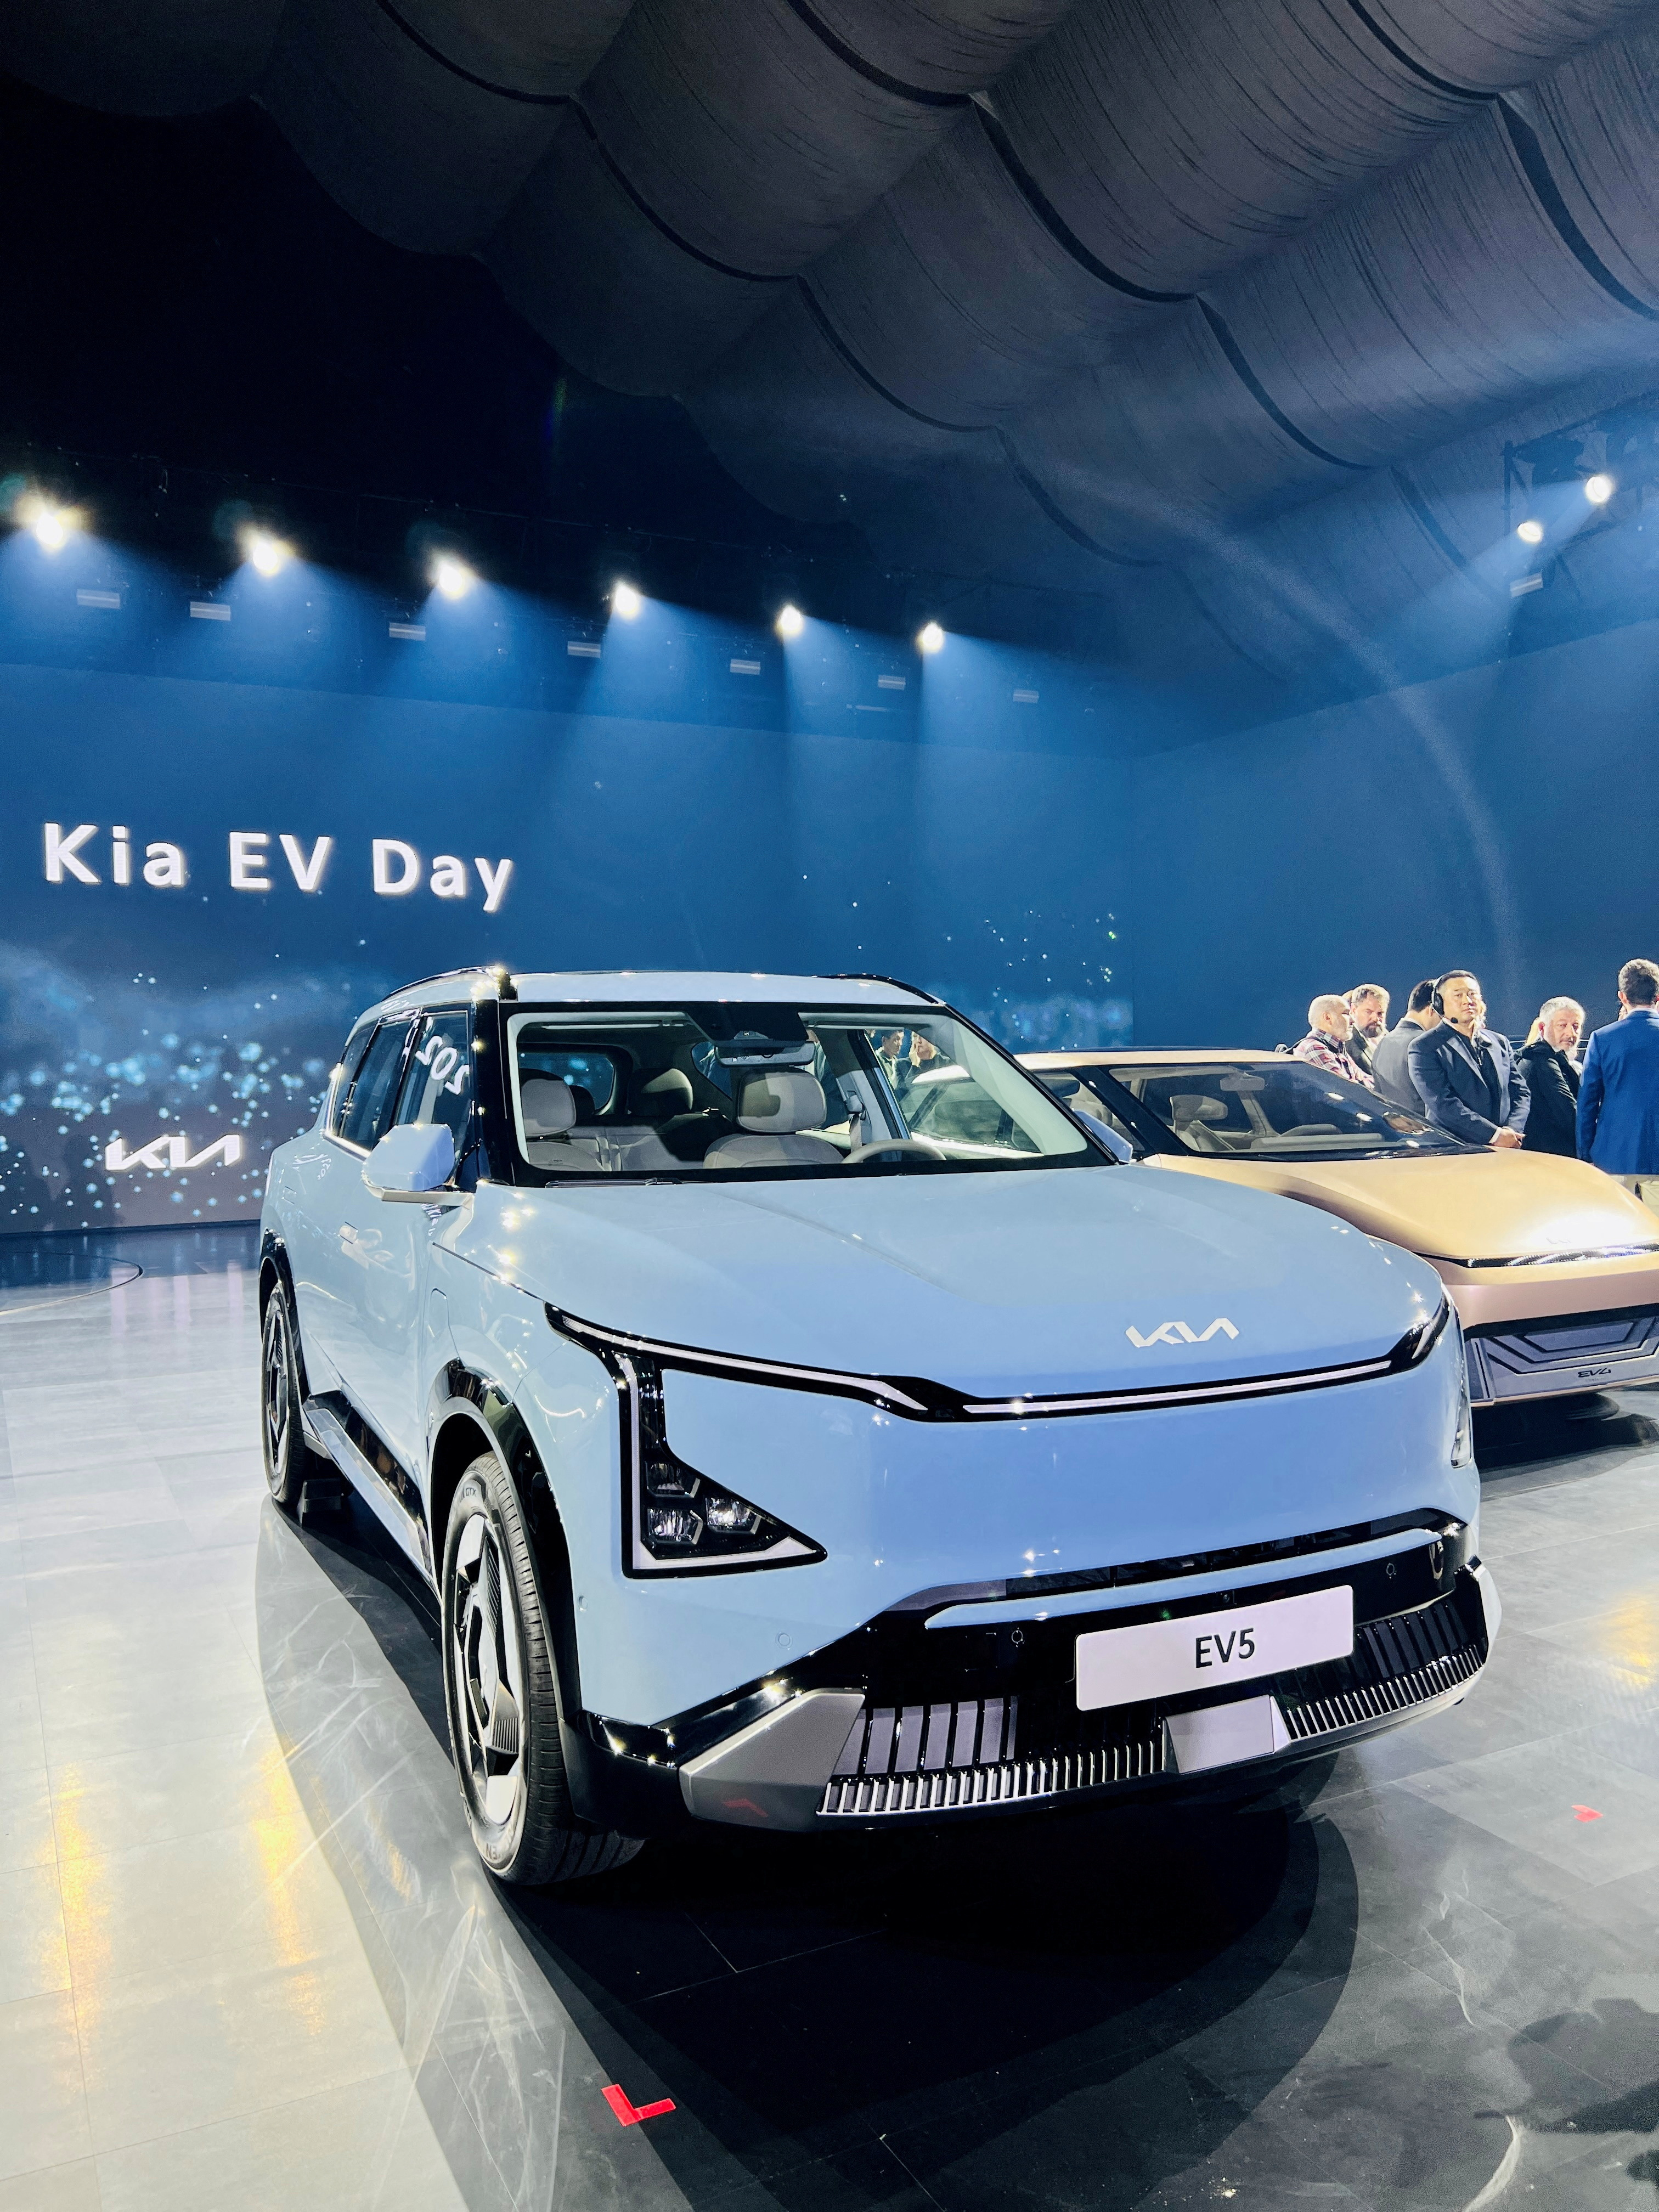 A Kia EV5 electric vehicle is displayed at the Kia EV Day event in Yeoju